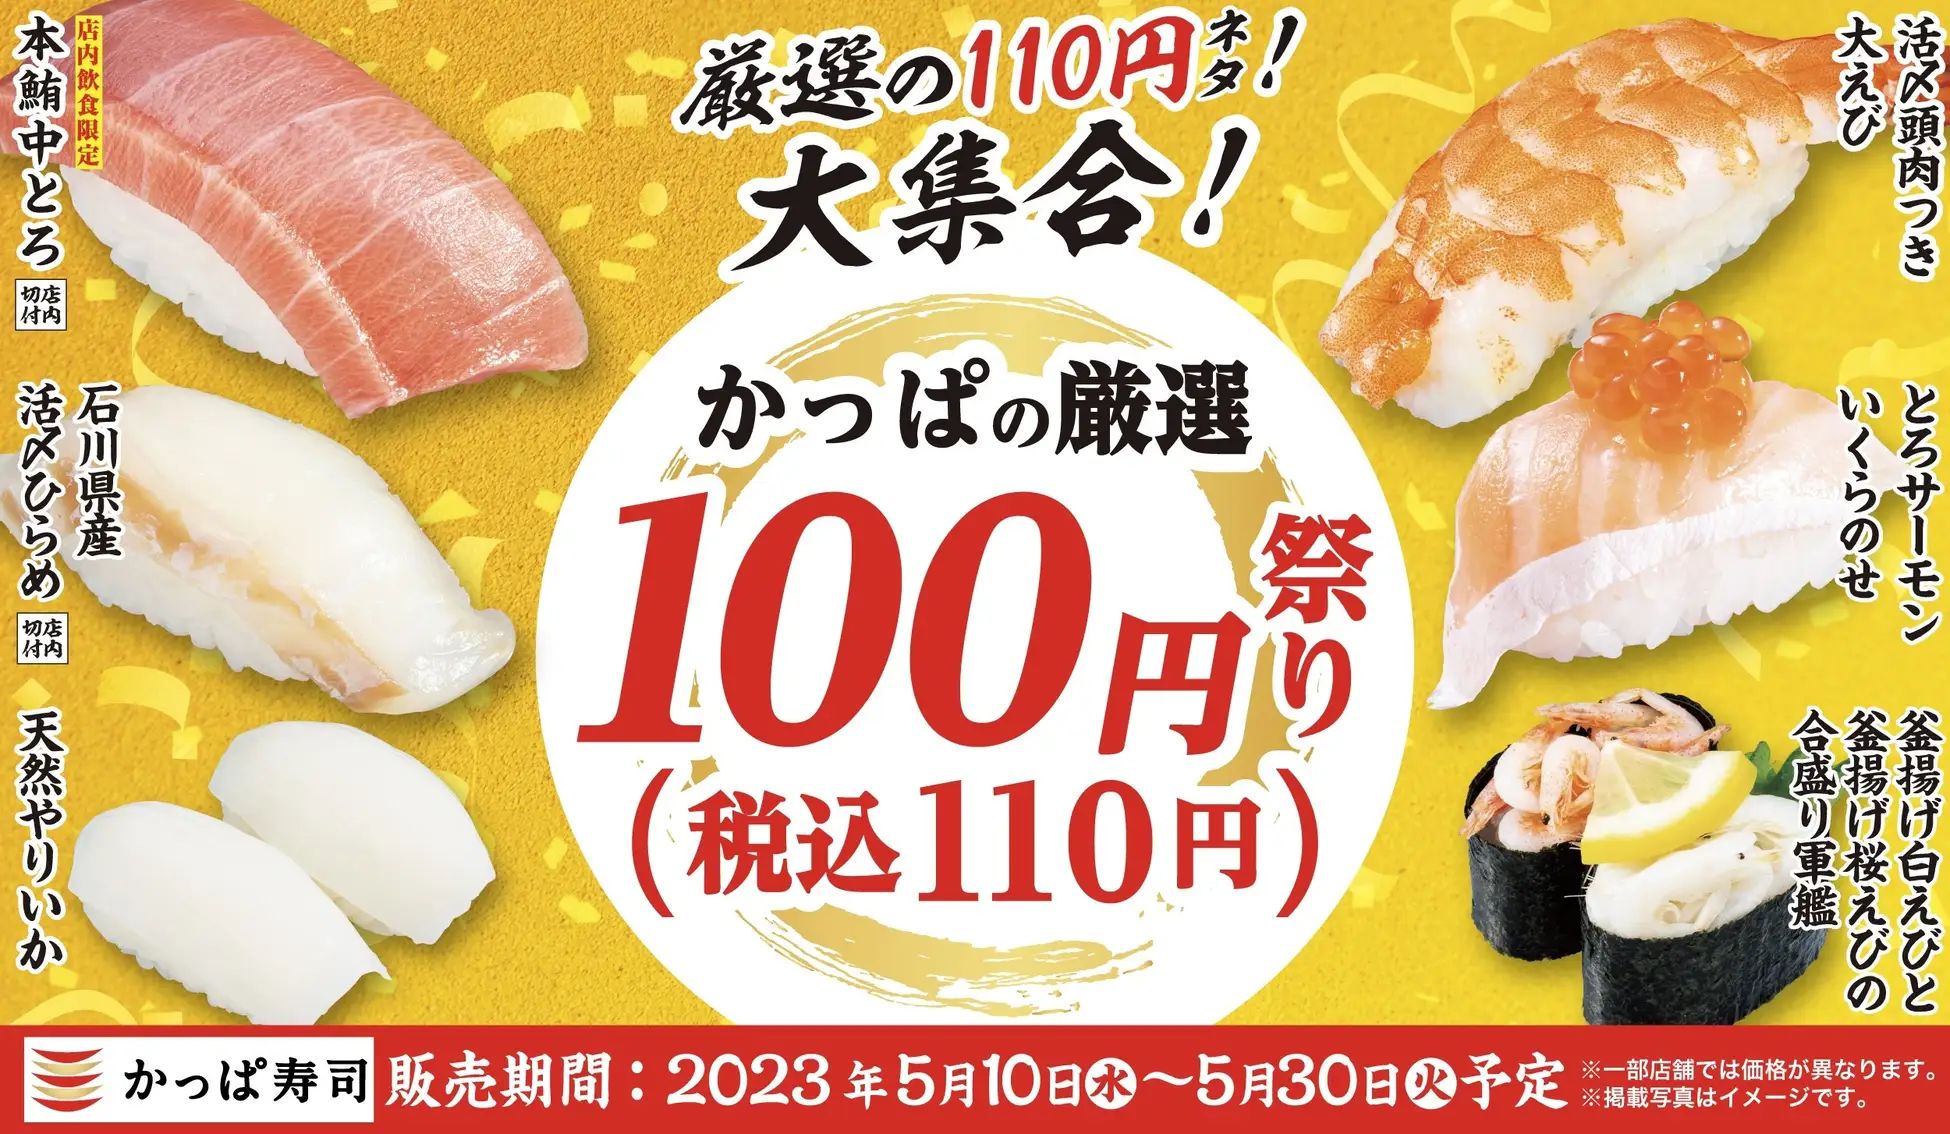 かっぱ寿司「かっぱの厳選100円(税込110円)祭り」